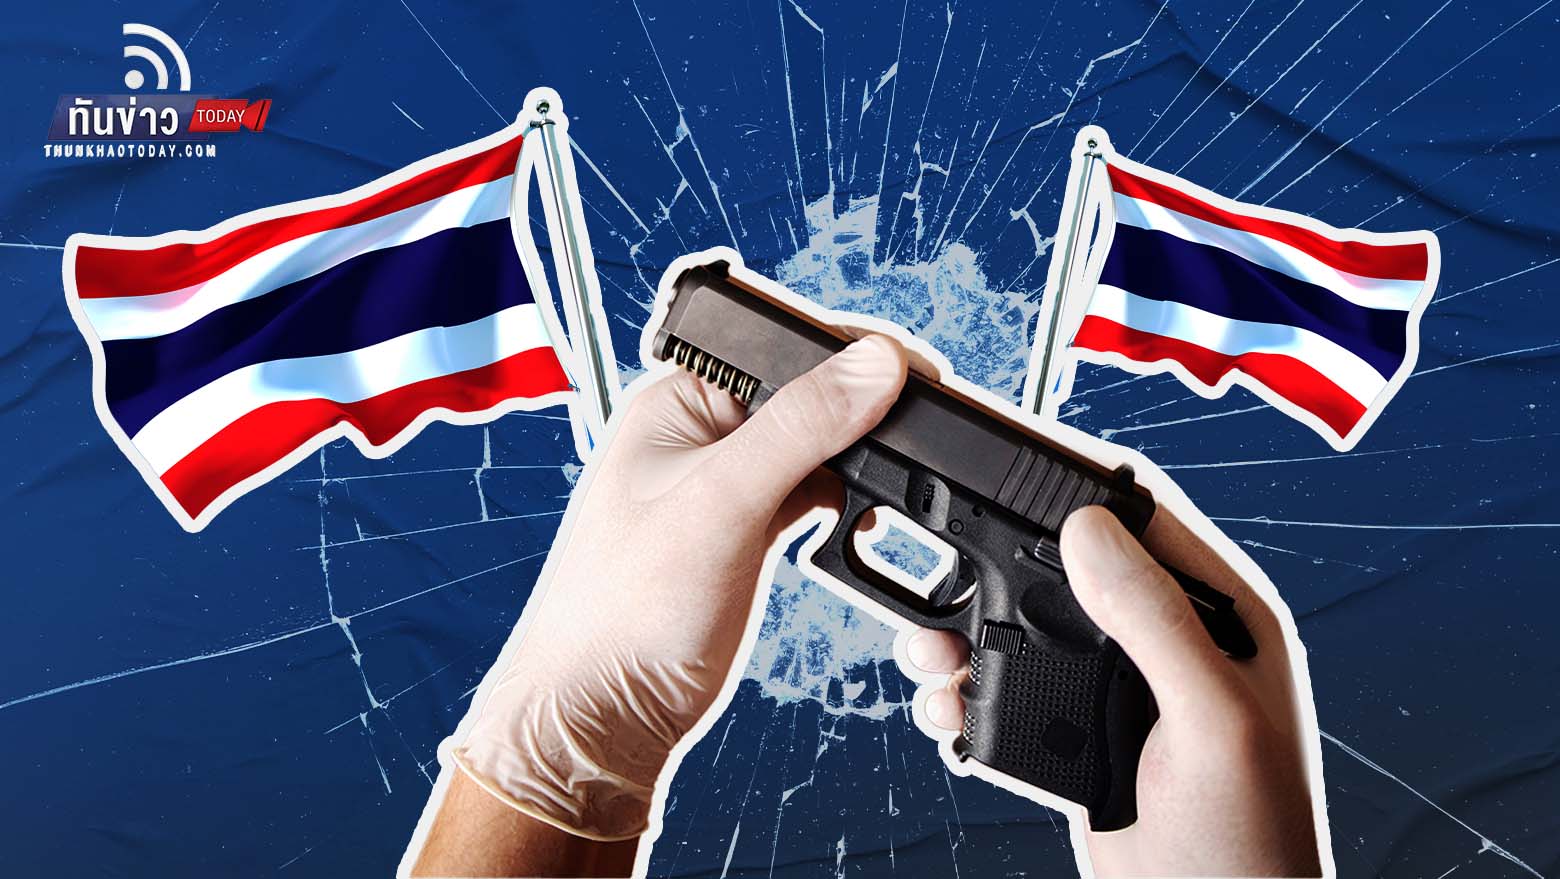 ไทยครองแชมป์อาวุธปืนสูงสุดในอาเซียน จี้รัฐควบคุมกวาดล้างปืนเถื่อน ไม่ควรซื้อง่ายผ่านออนไลน์